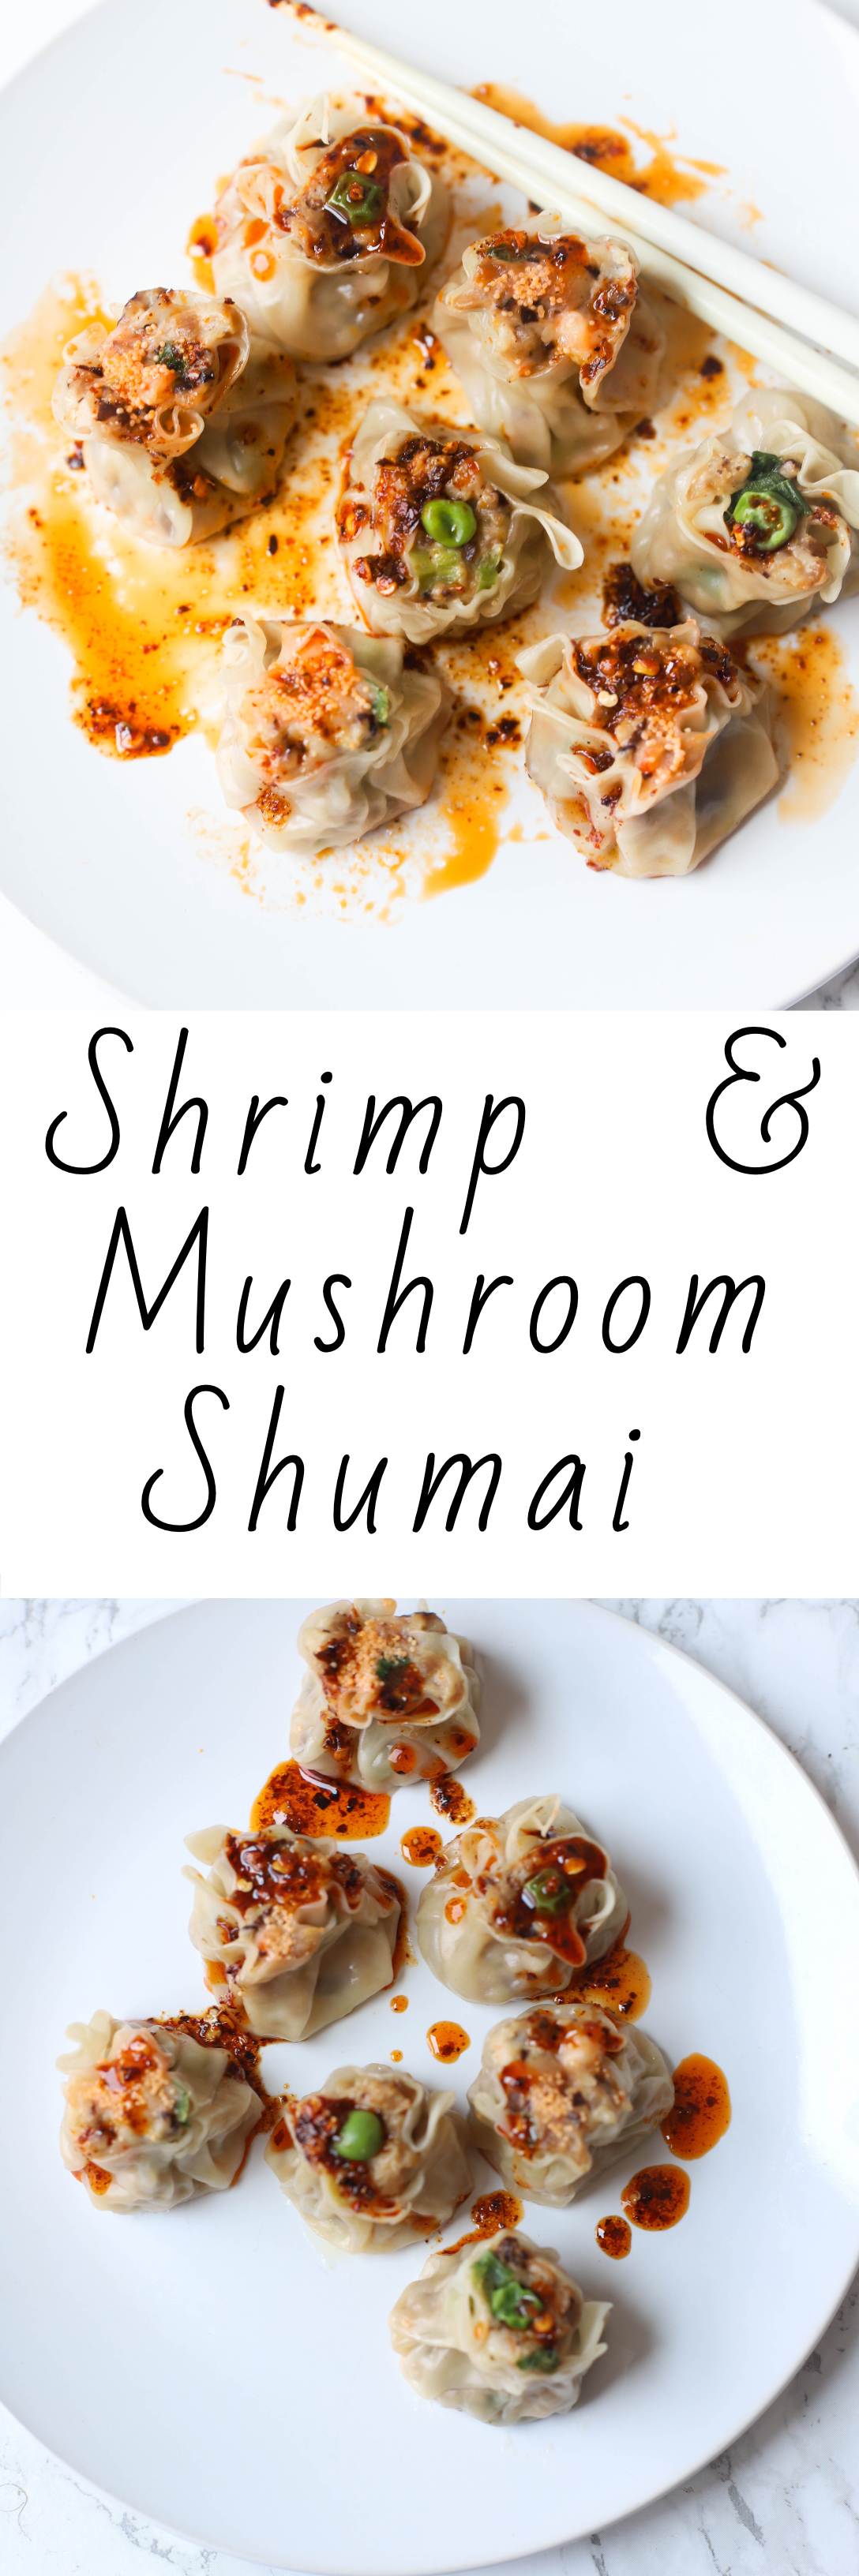 shrimp & mushroom shumai.jpg